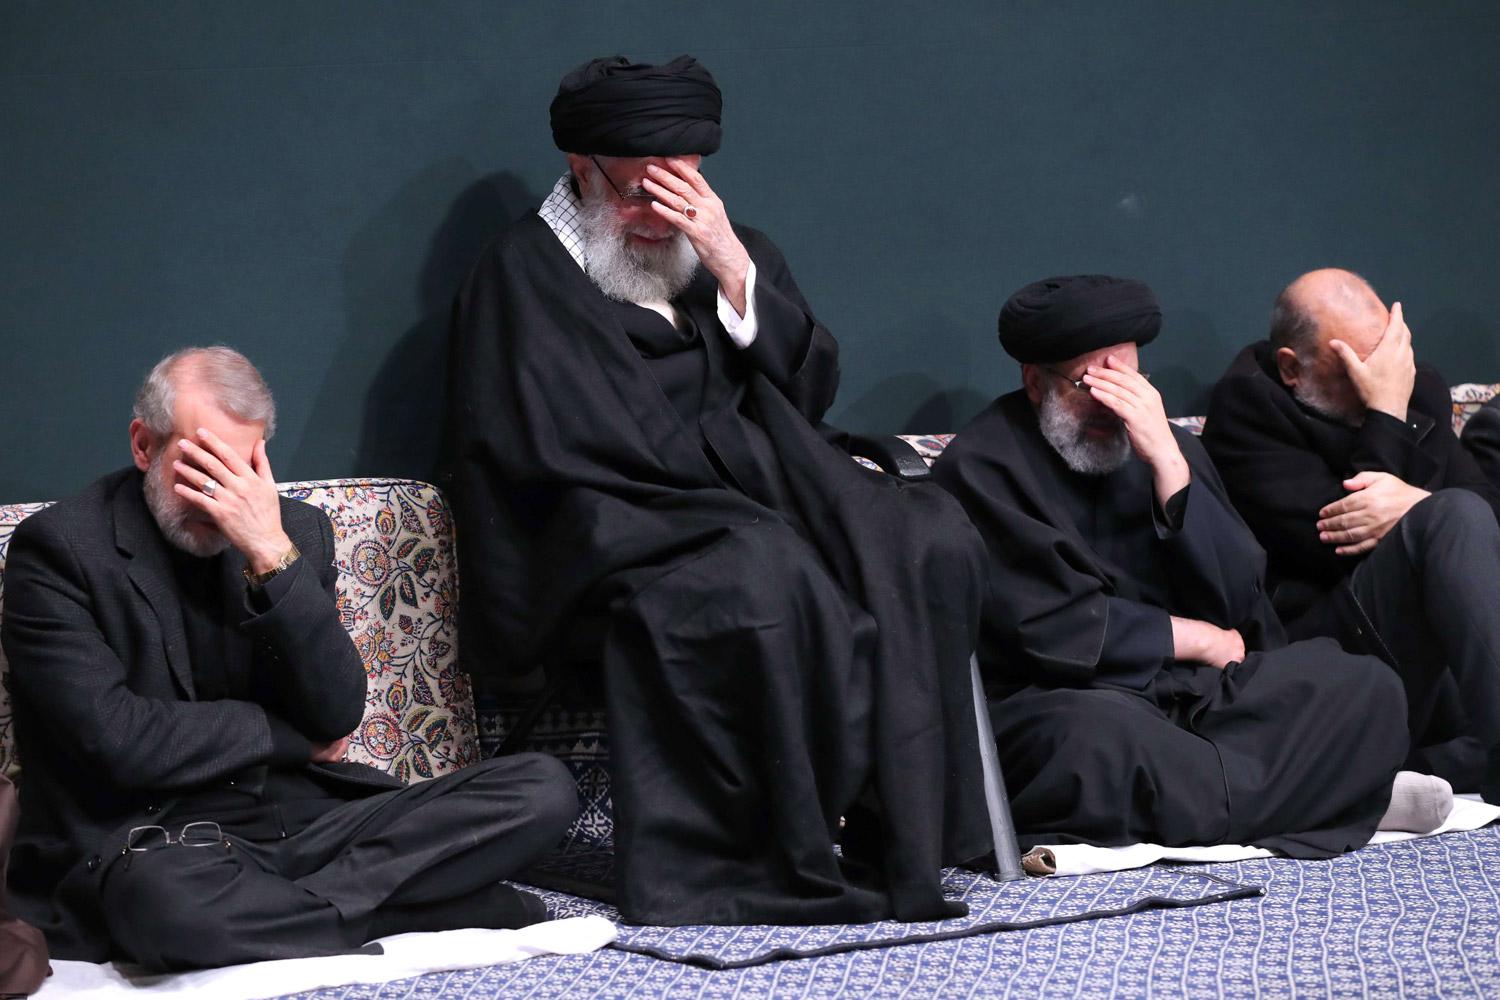 بكائيات النظام الإيراني لا تعكس حقيقة ما يقوم به من تهديد لأمن المنطقة